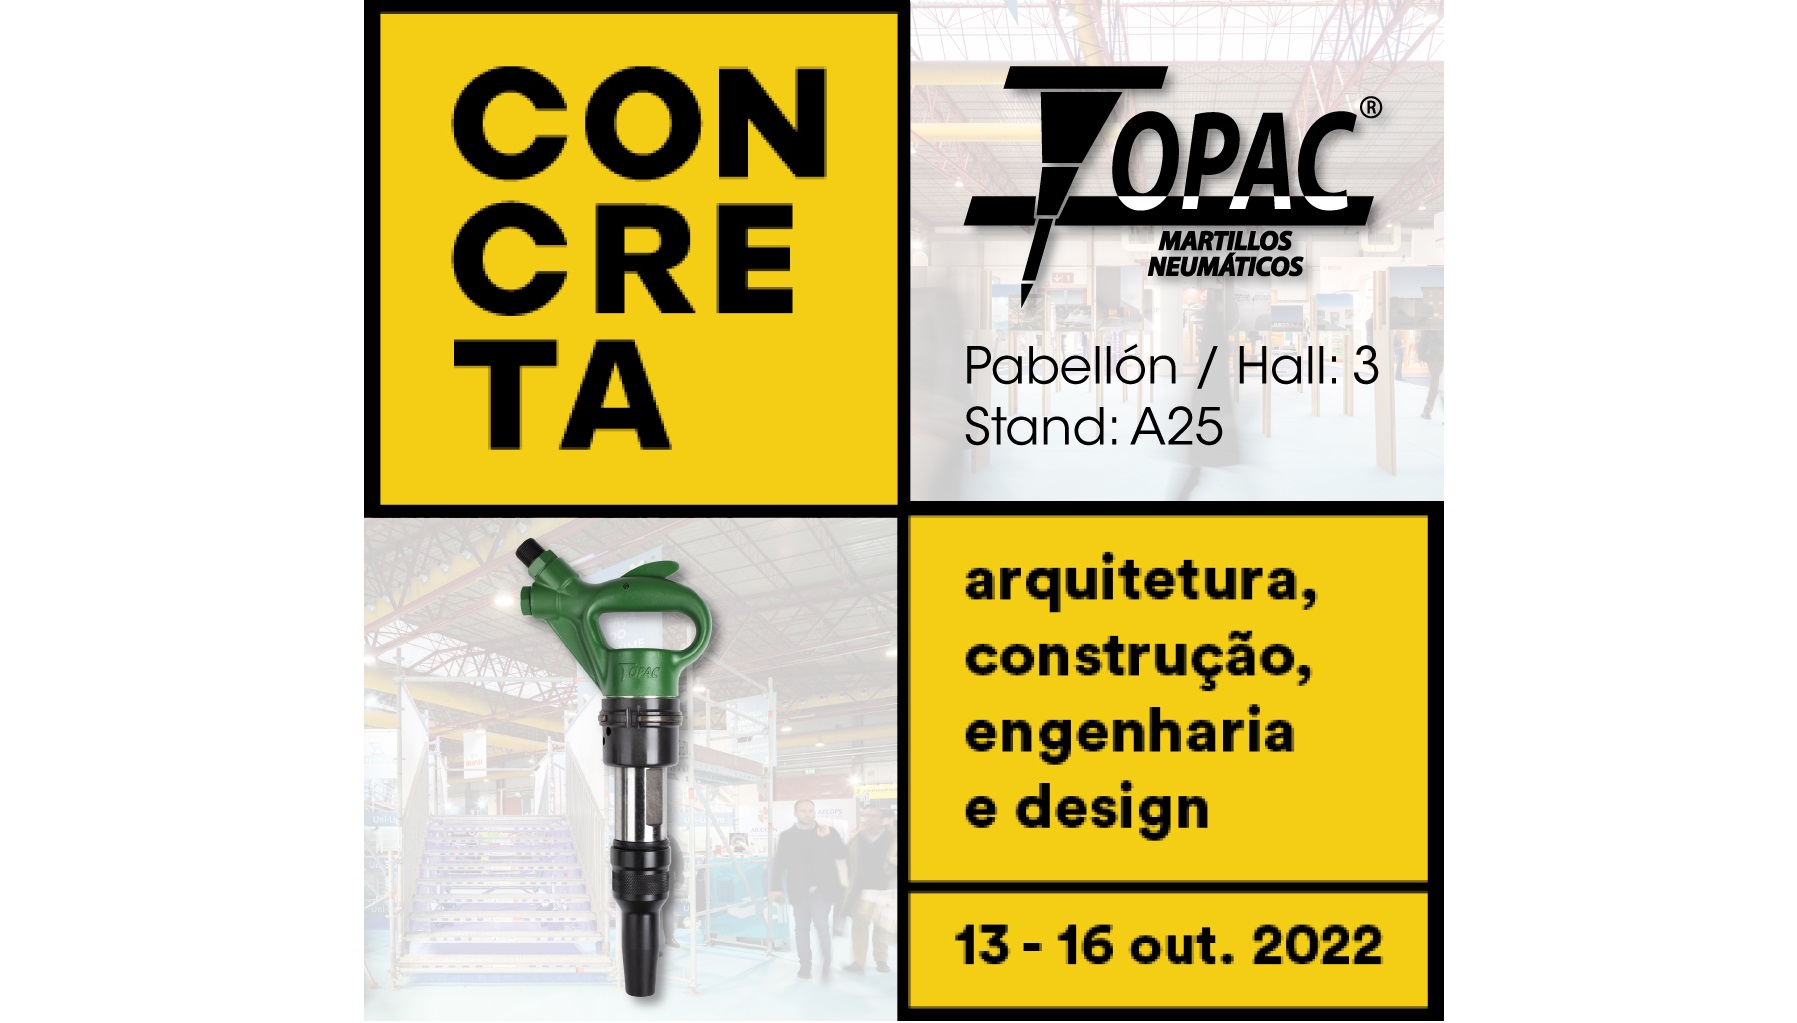 Topac will be present at Concreta 2022 fair in Oporto